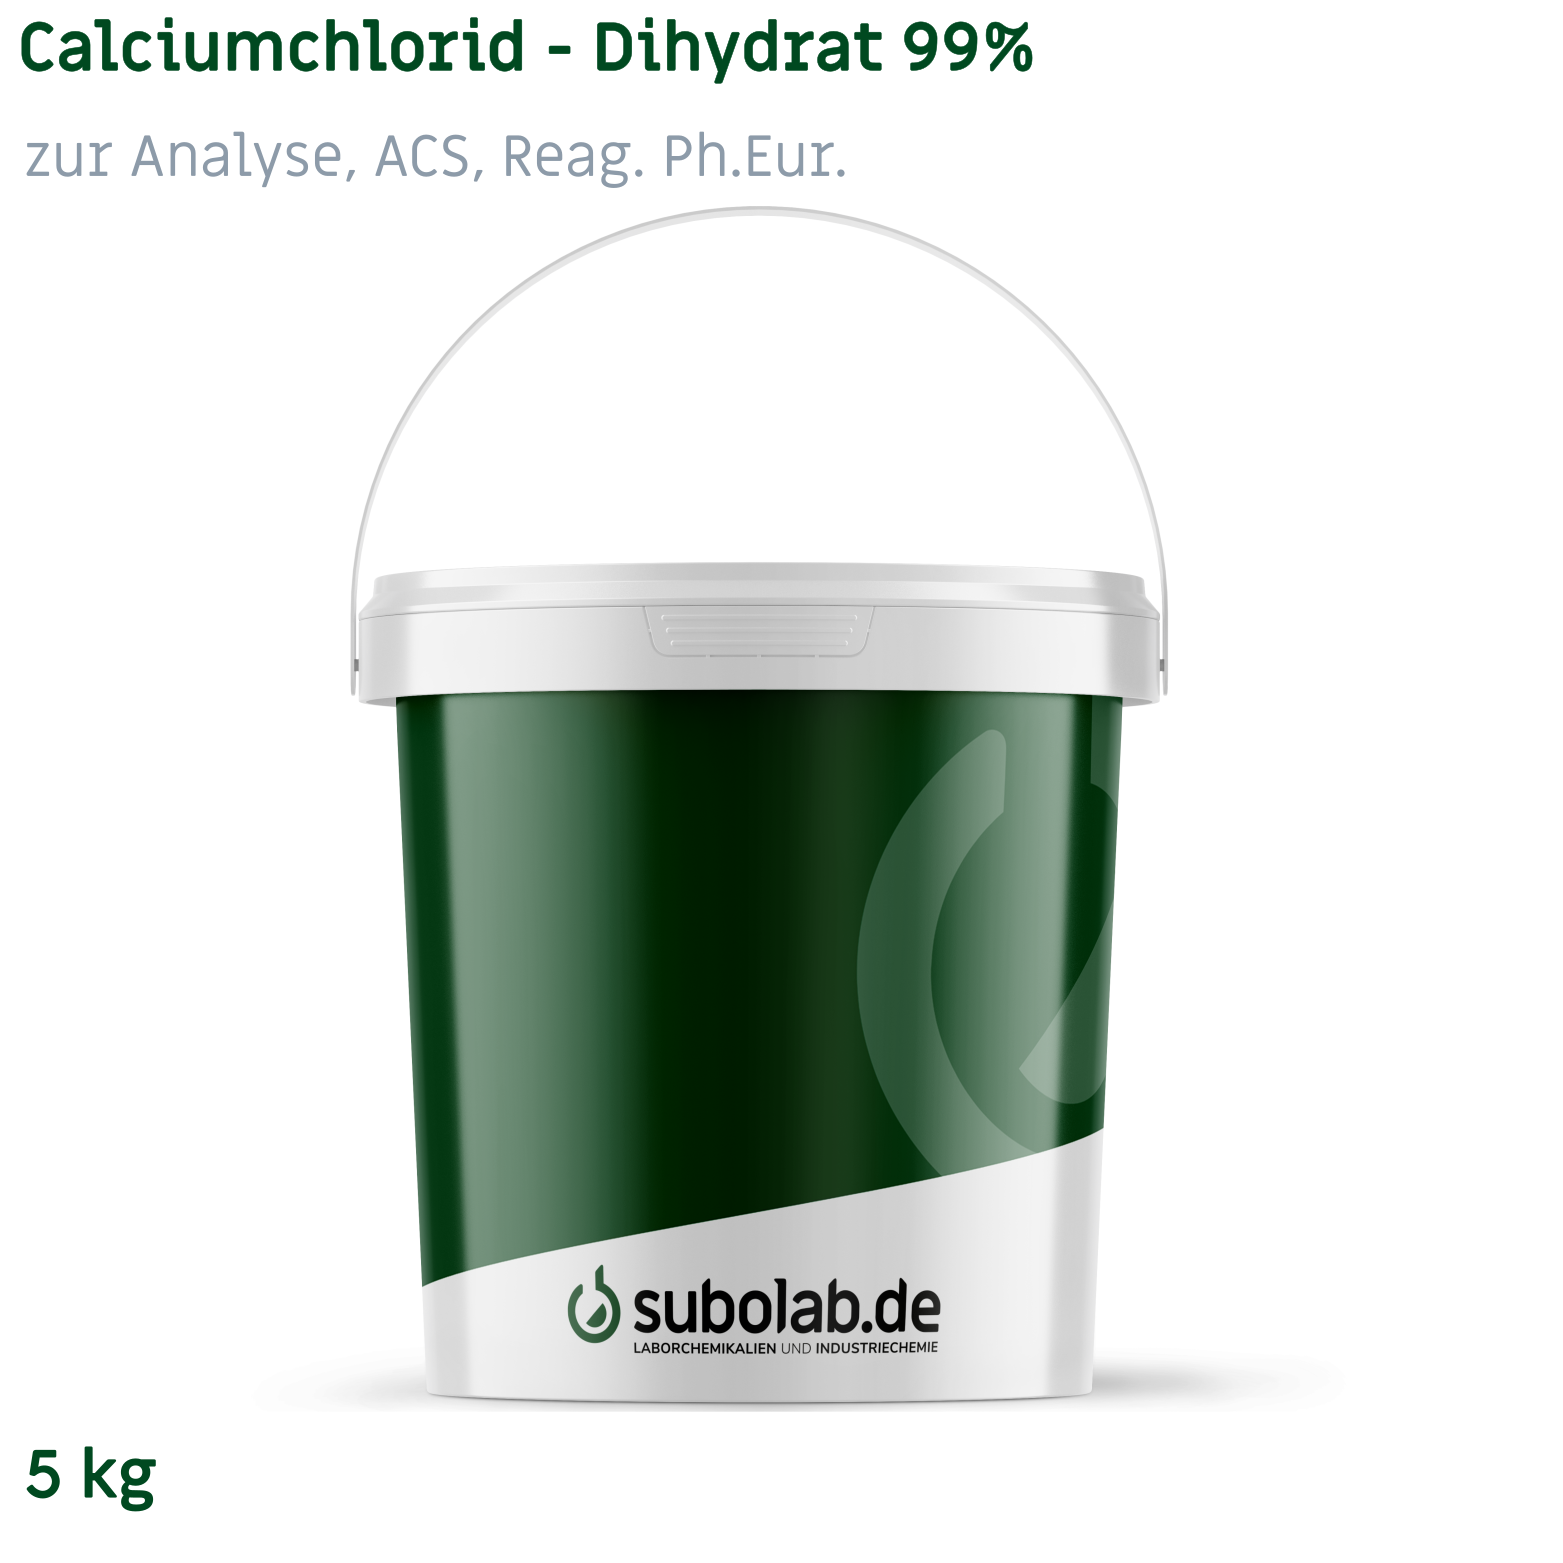 Bild von Calciumchlorid - Dihydrat 99% zur Analyse, ACS, Reag. Ph.Eur. (5 kg)